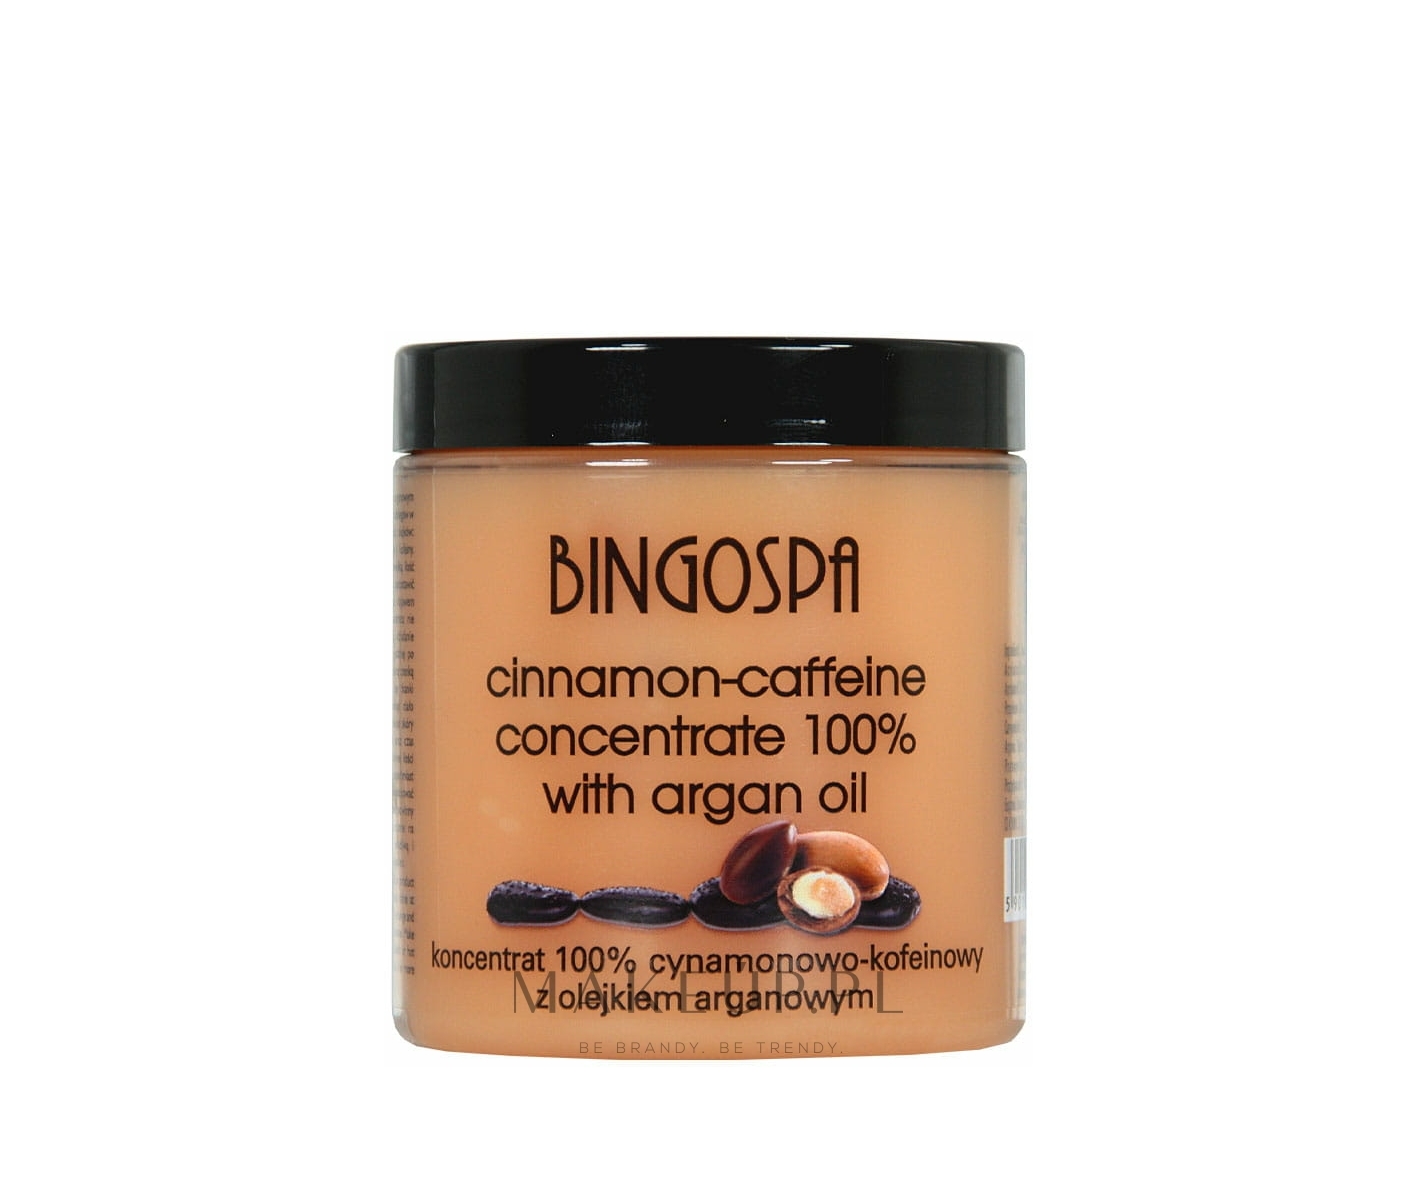 BINGOSPA, Koncentrat cynamonowo-kofeinowy